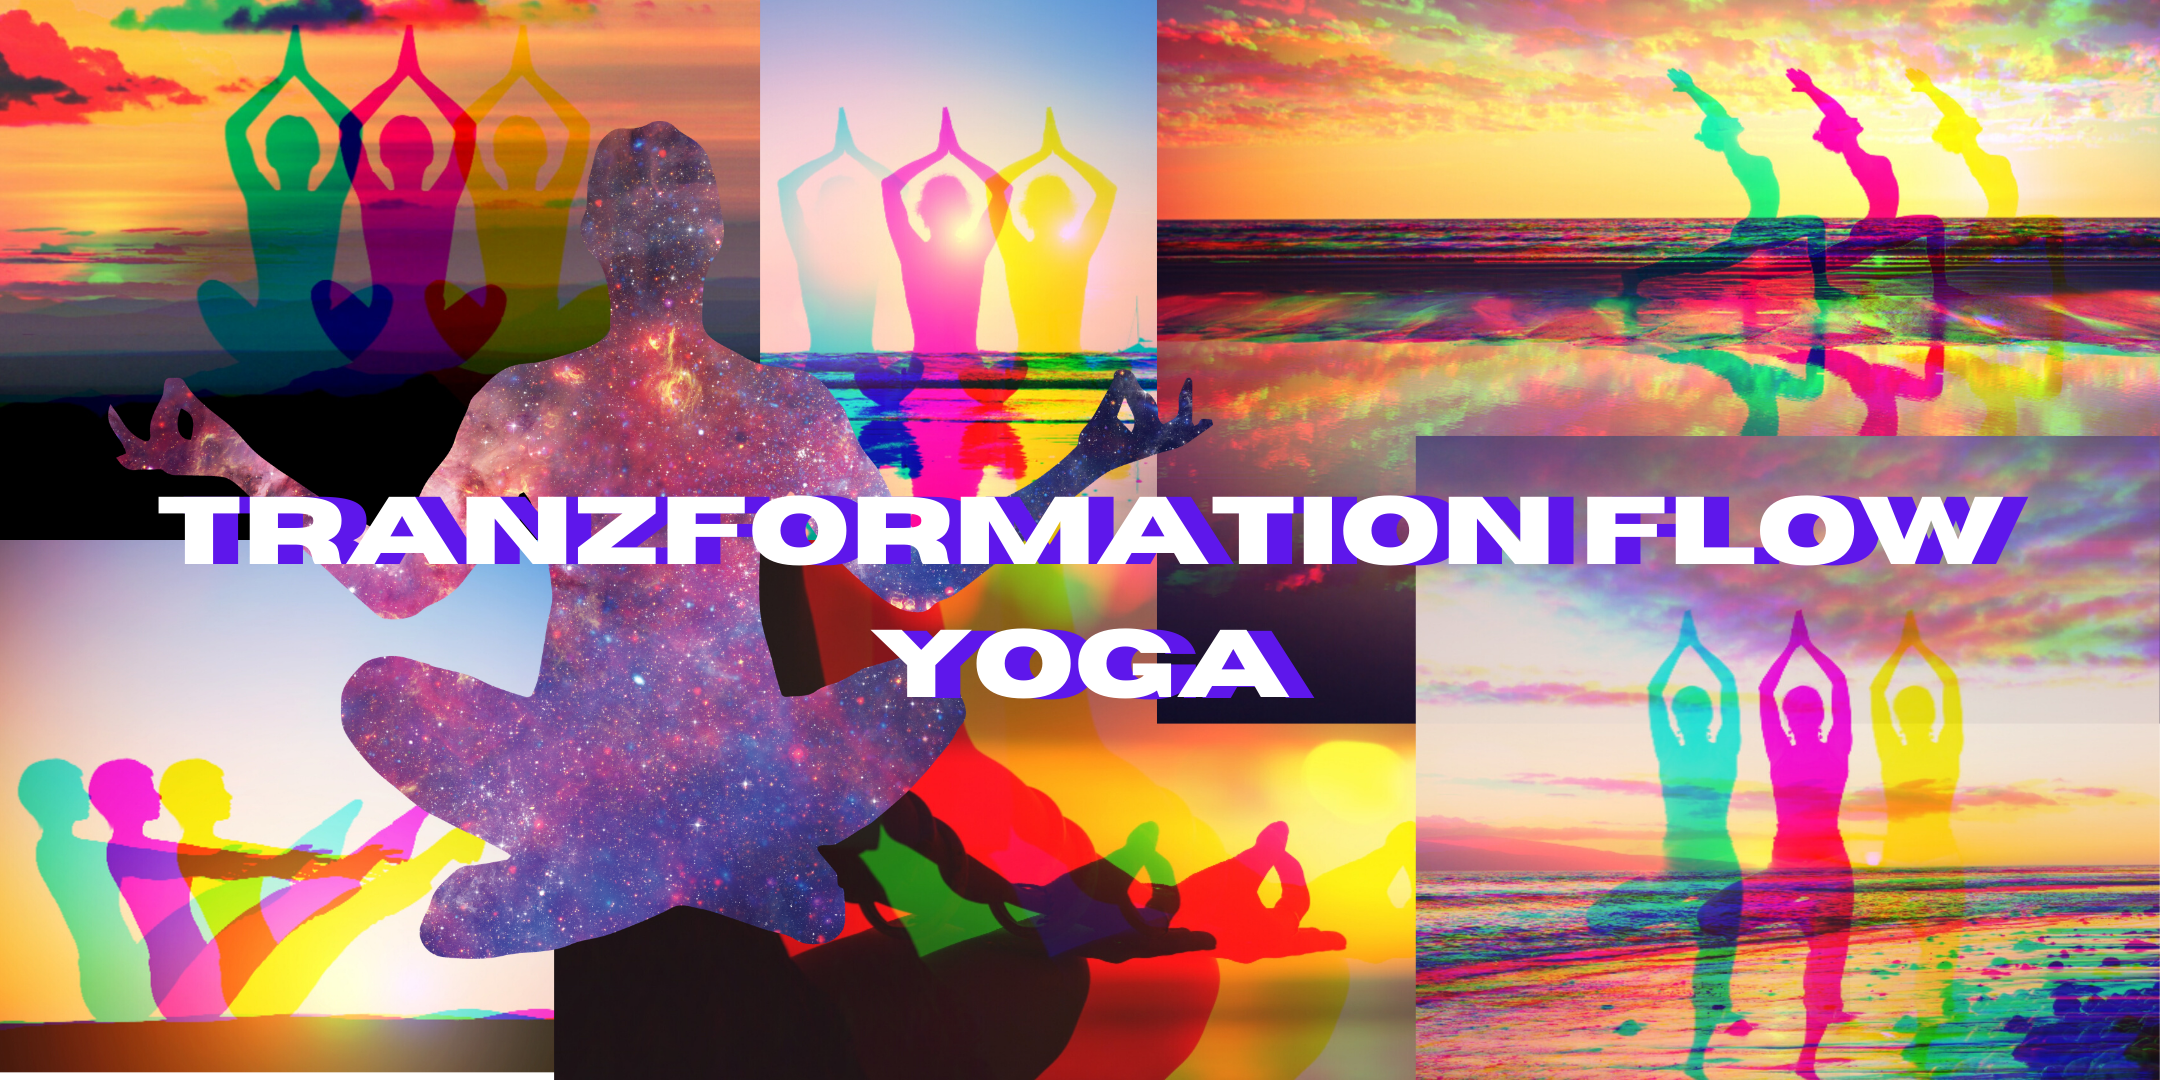 Tranzformation Flow Yoga